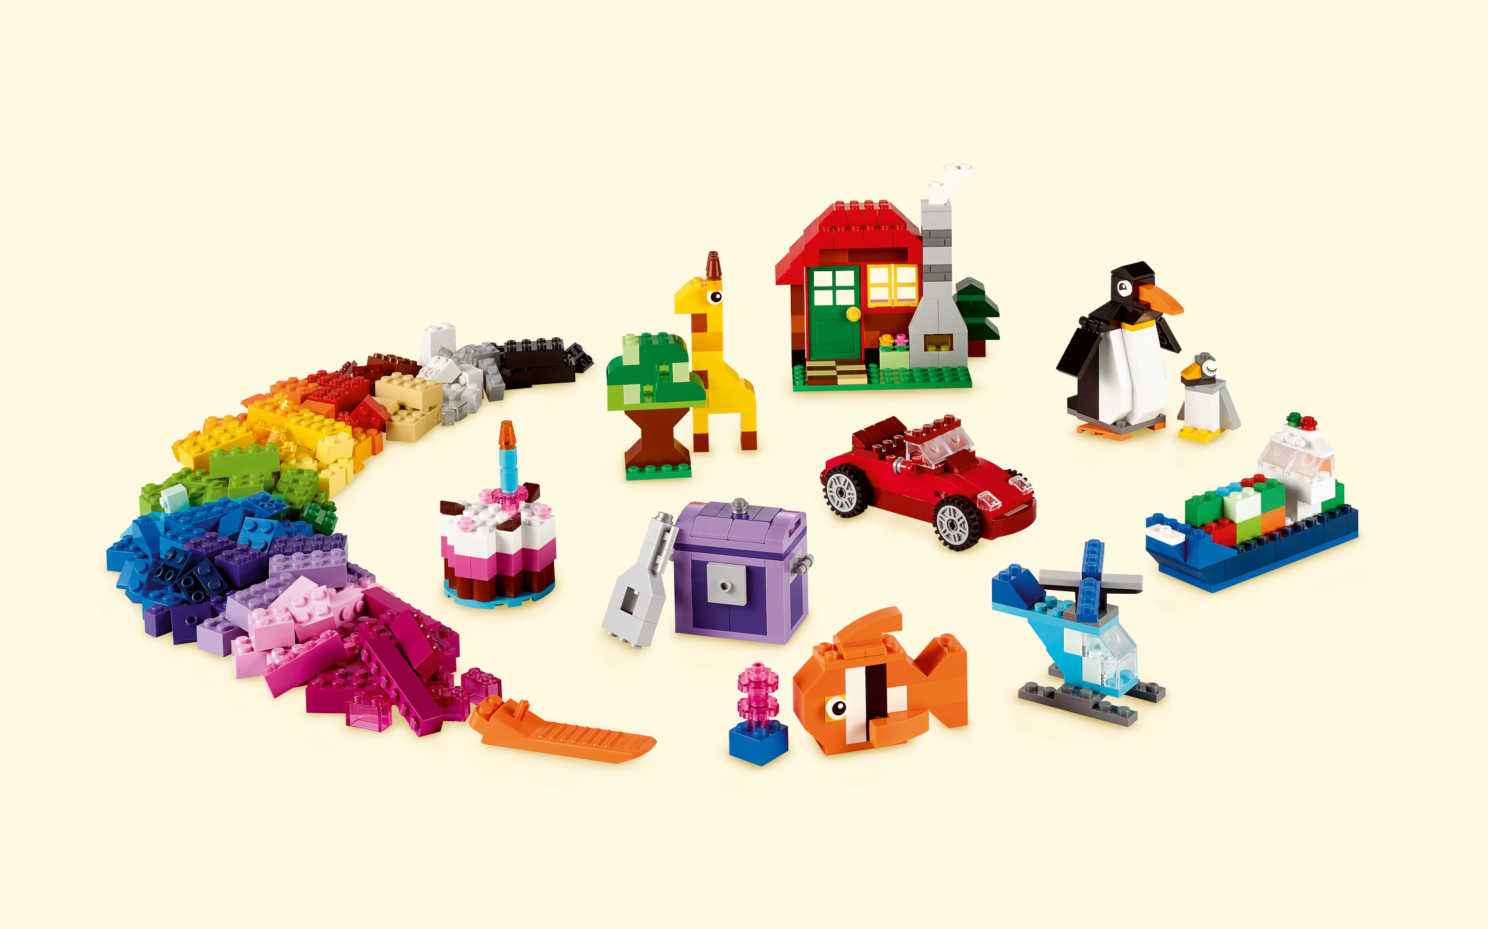 Đồ Chơi Lego Classic Thùng gạch lắp ráp sáng tạo 10695